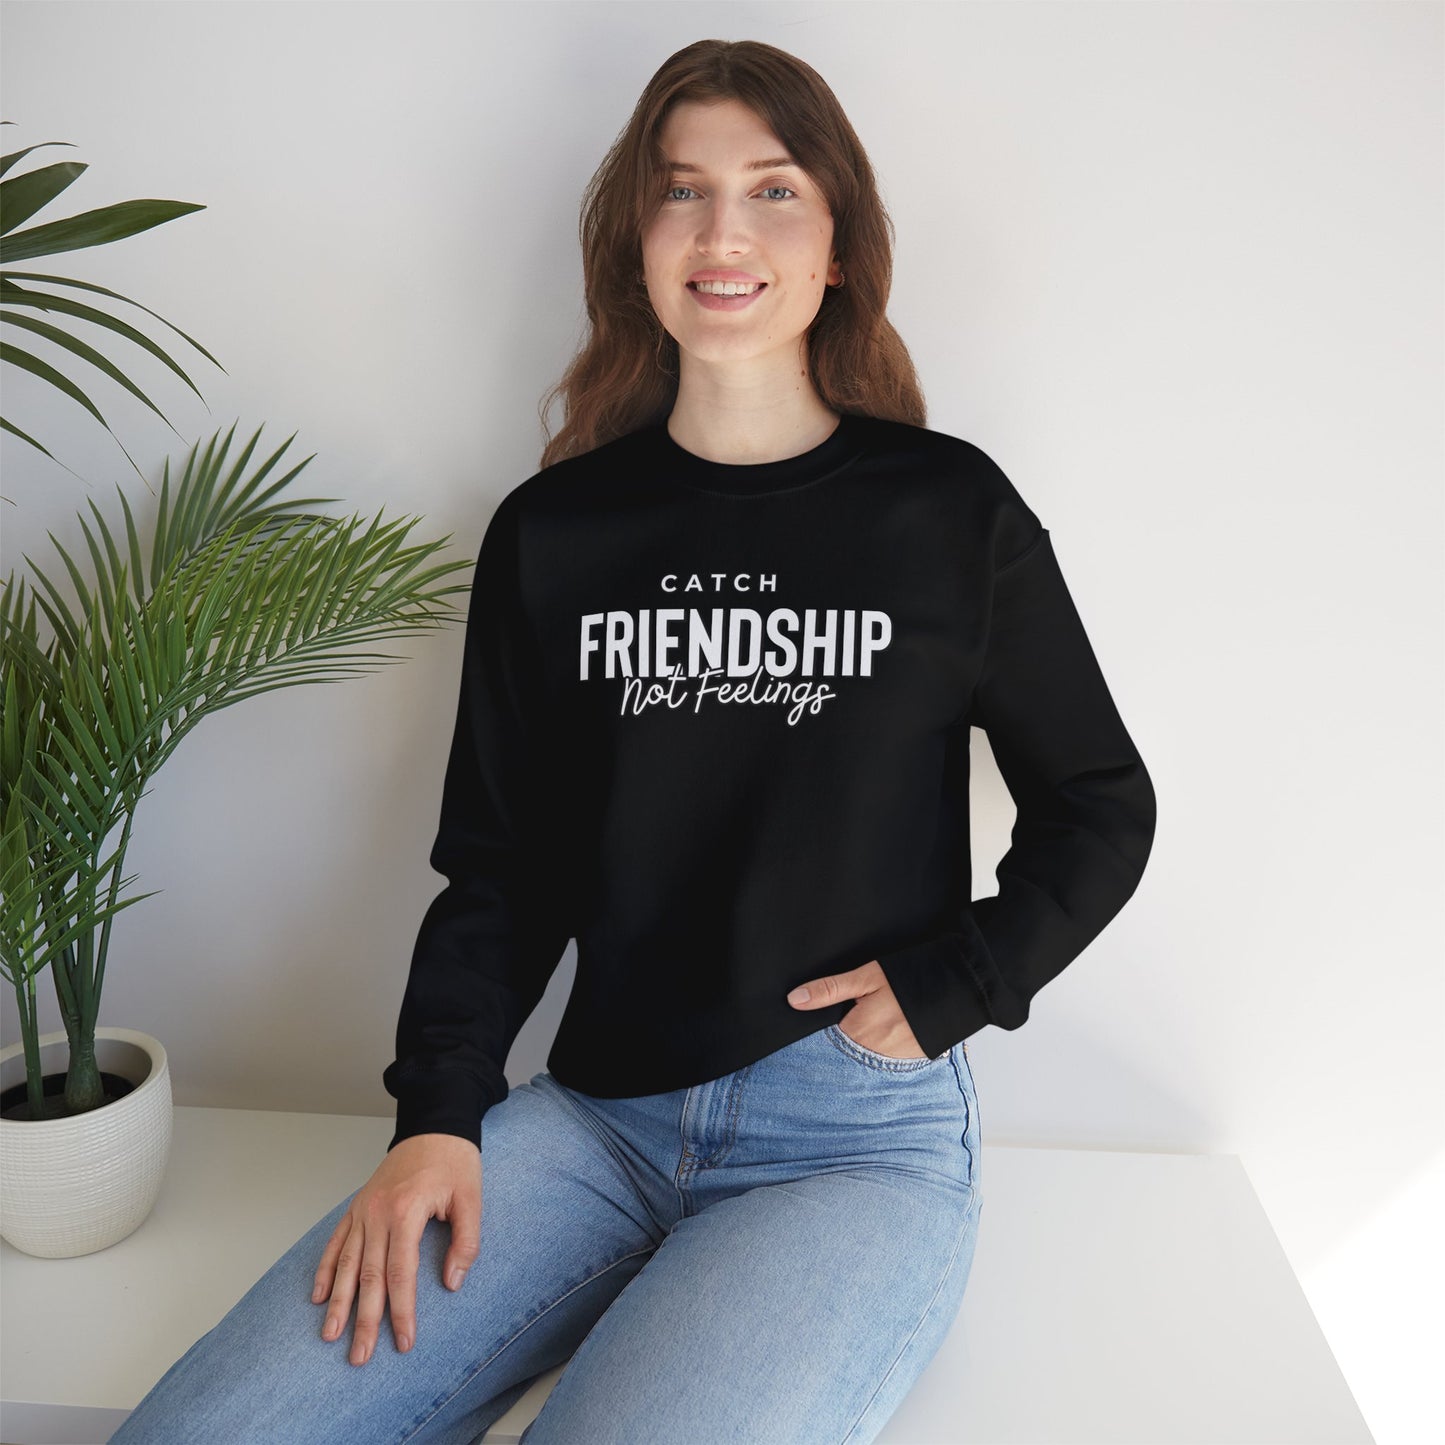 Catch Friendship Not Feelings Heavy Blend™ Crewneck Sweatshirt Black